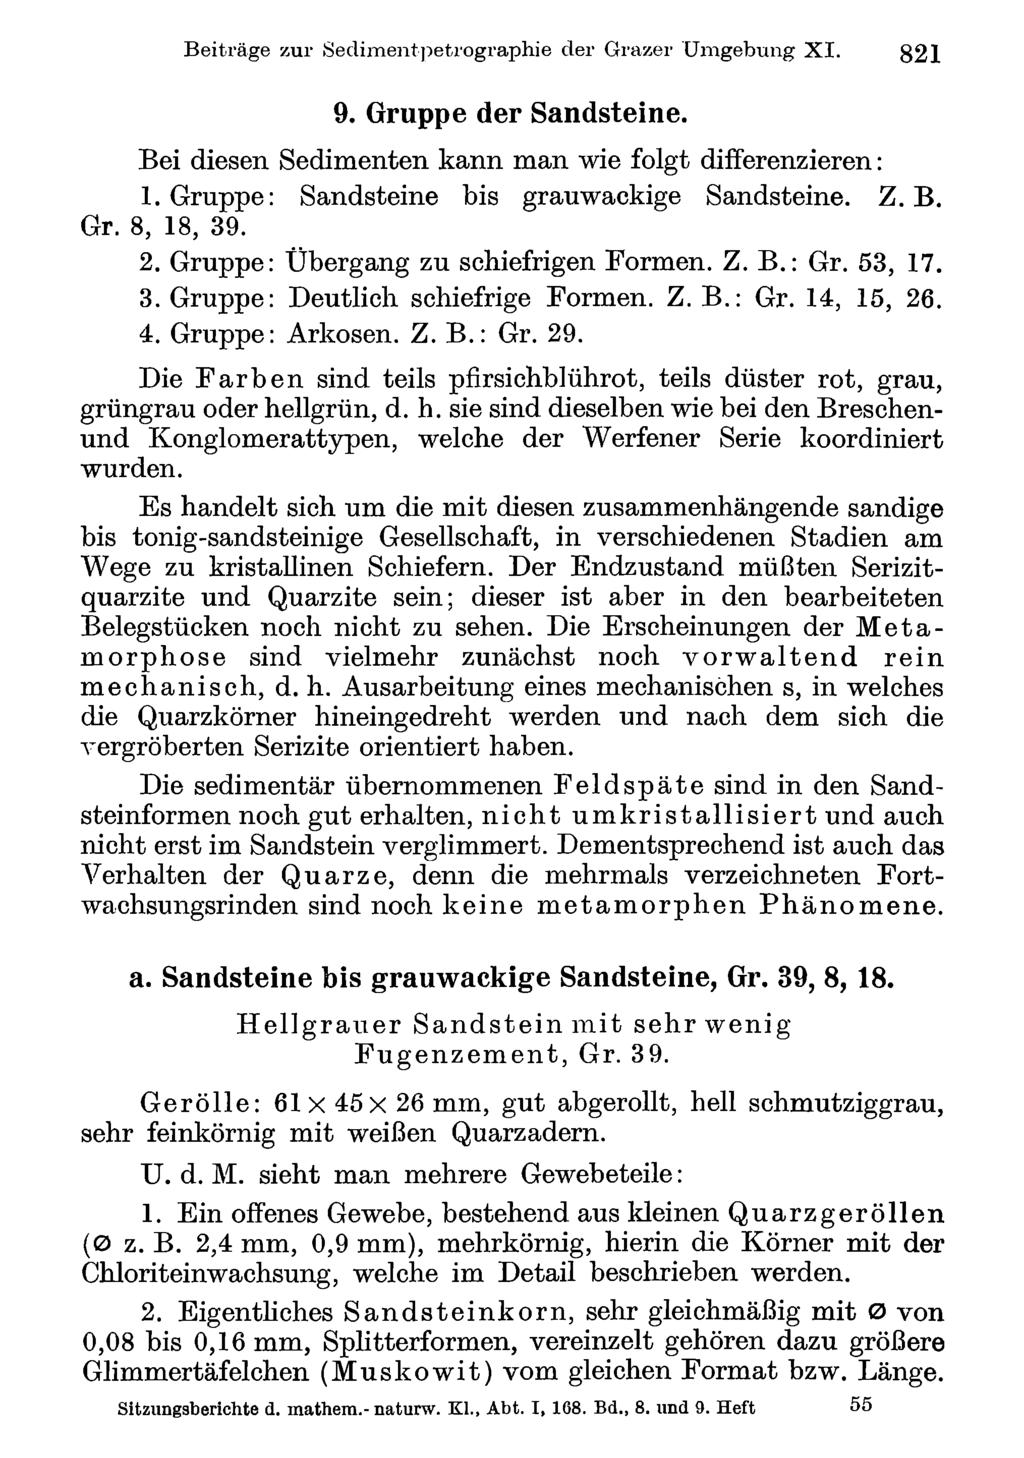 Beiträge Akademie zur Sedimentpetrographie d. Wissenschaften Wien; download der unter Grazer www.biologiezentrum.at Umgebung XI. 821 9. Gruppe der Sandsteine.